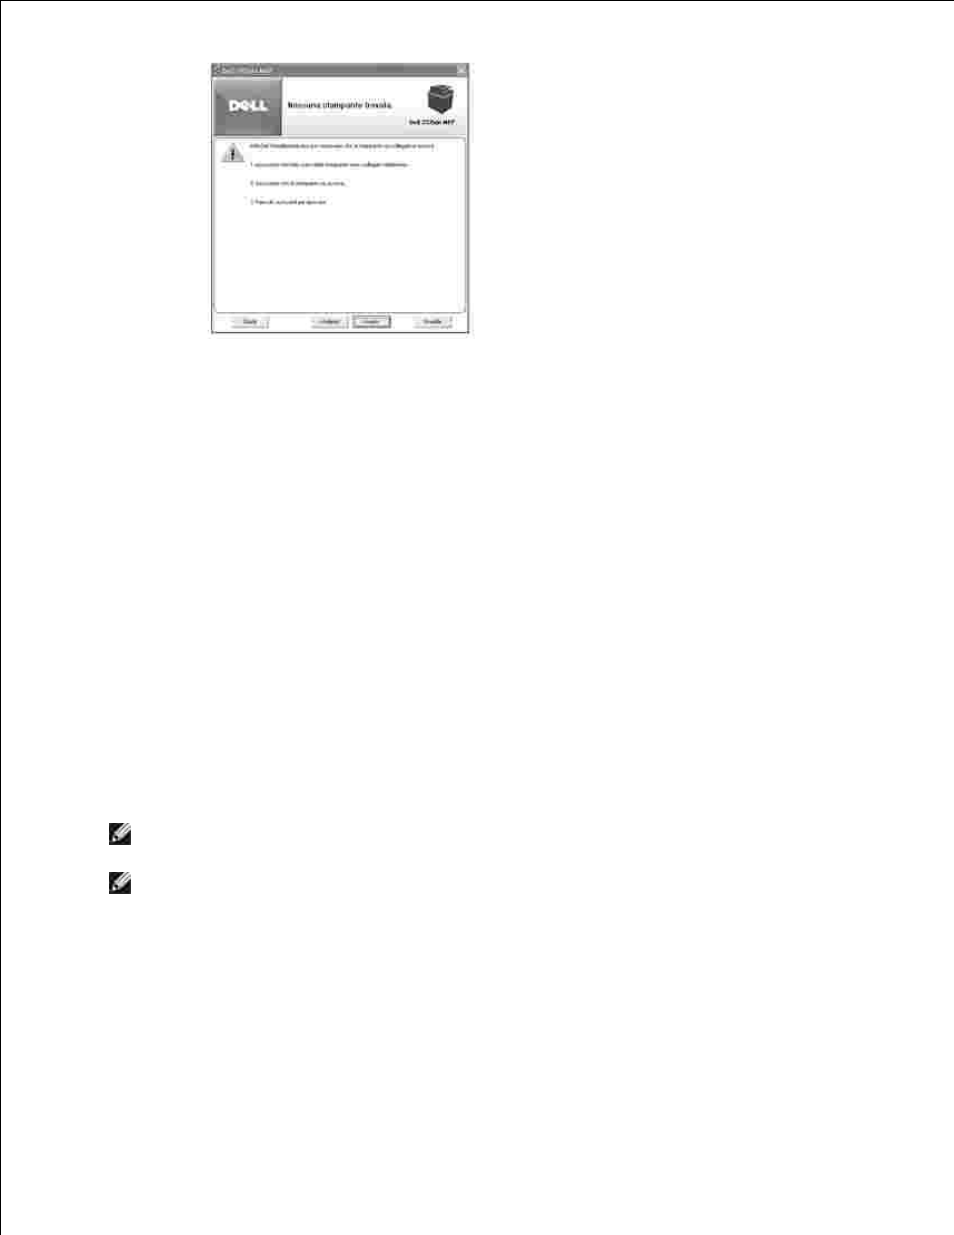 Installazione di rete, Assegnazione di un indirizzo ip | Dell 2335DN Manuale d'uso | Pagina 42 / 293